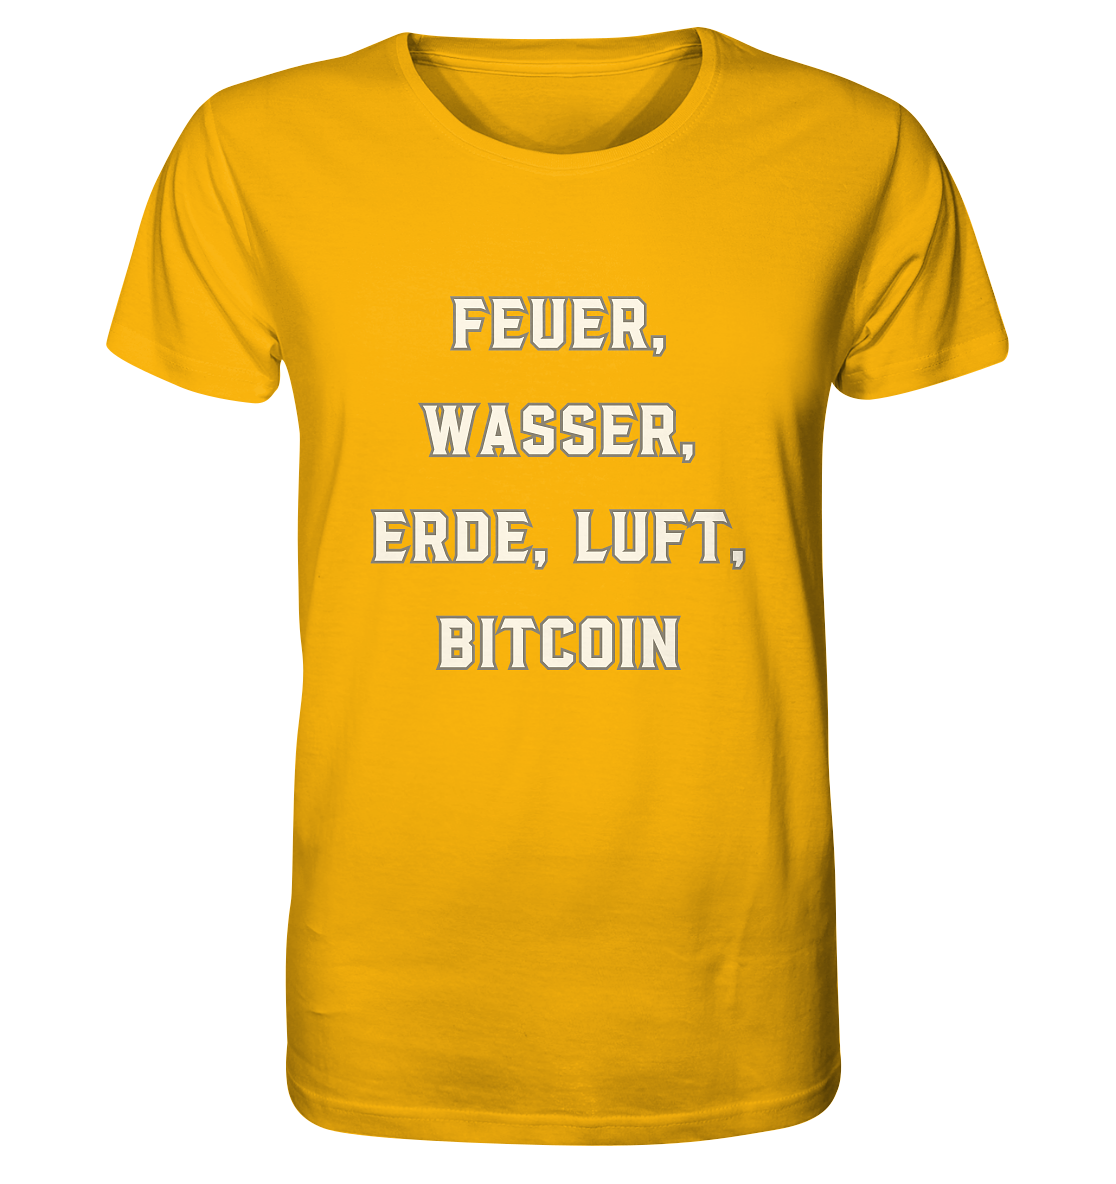 FEUER, WASSER, ERDE, LUFT, BITCOIN - Organic Shirt